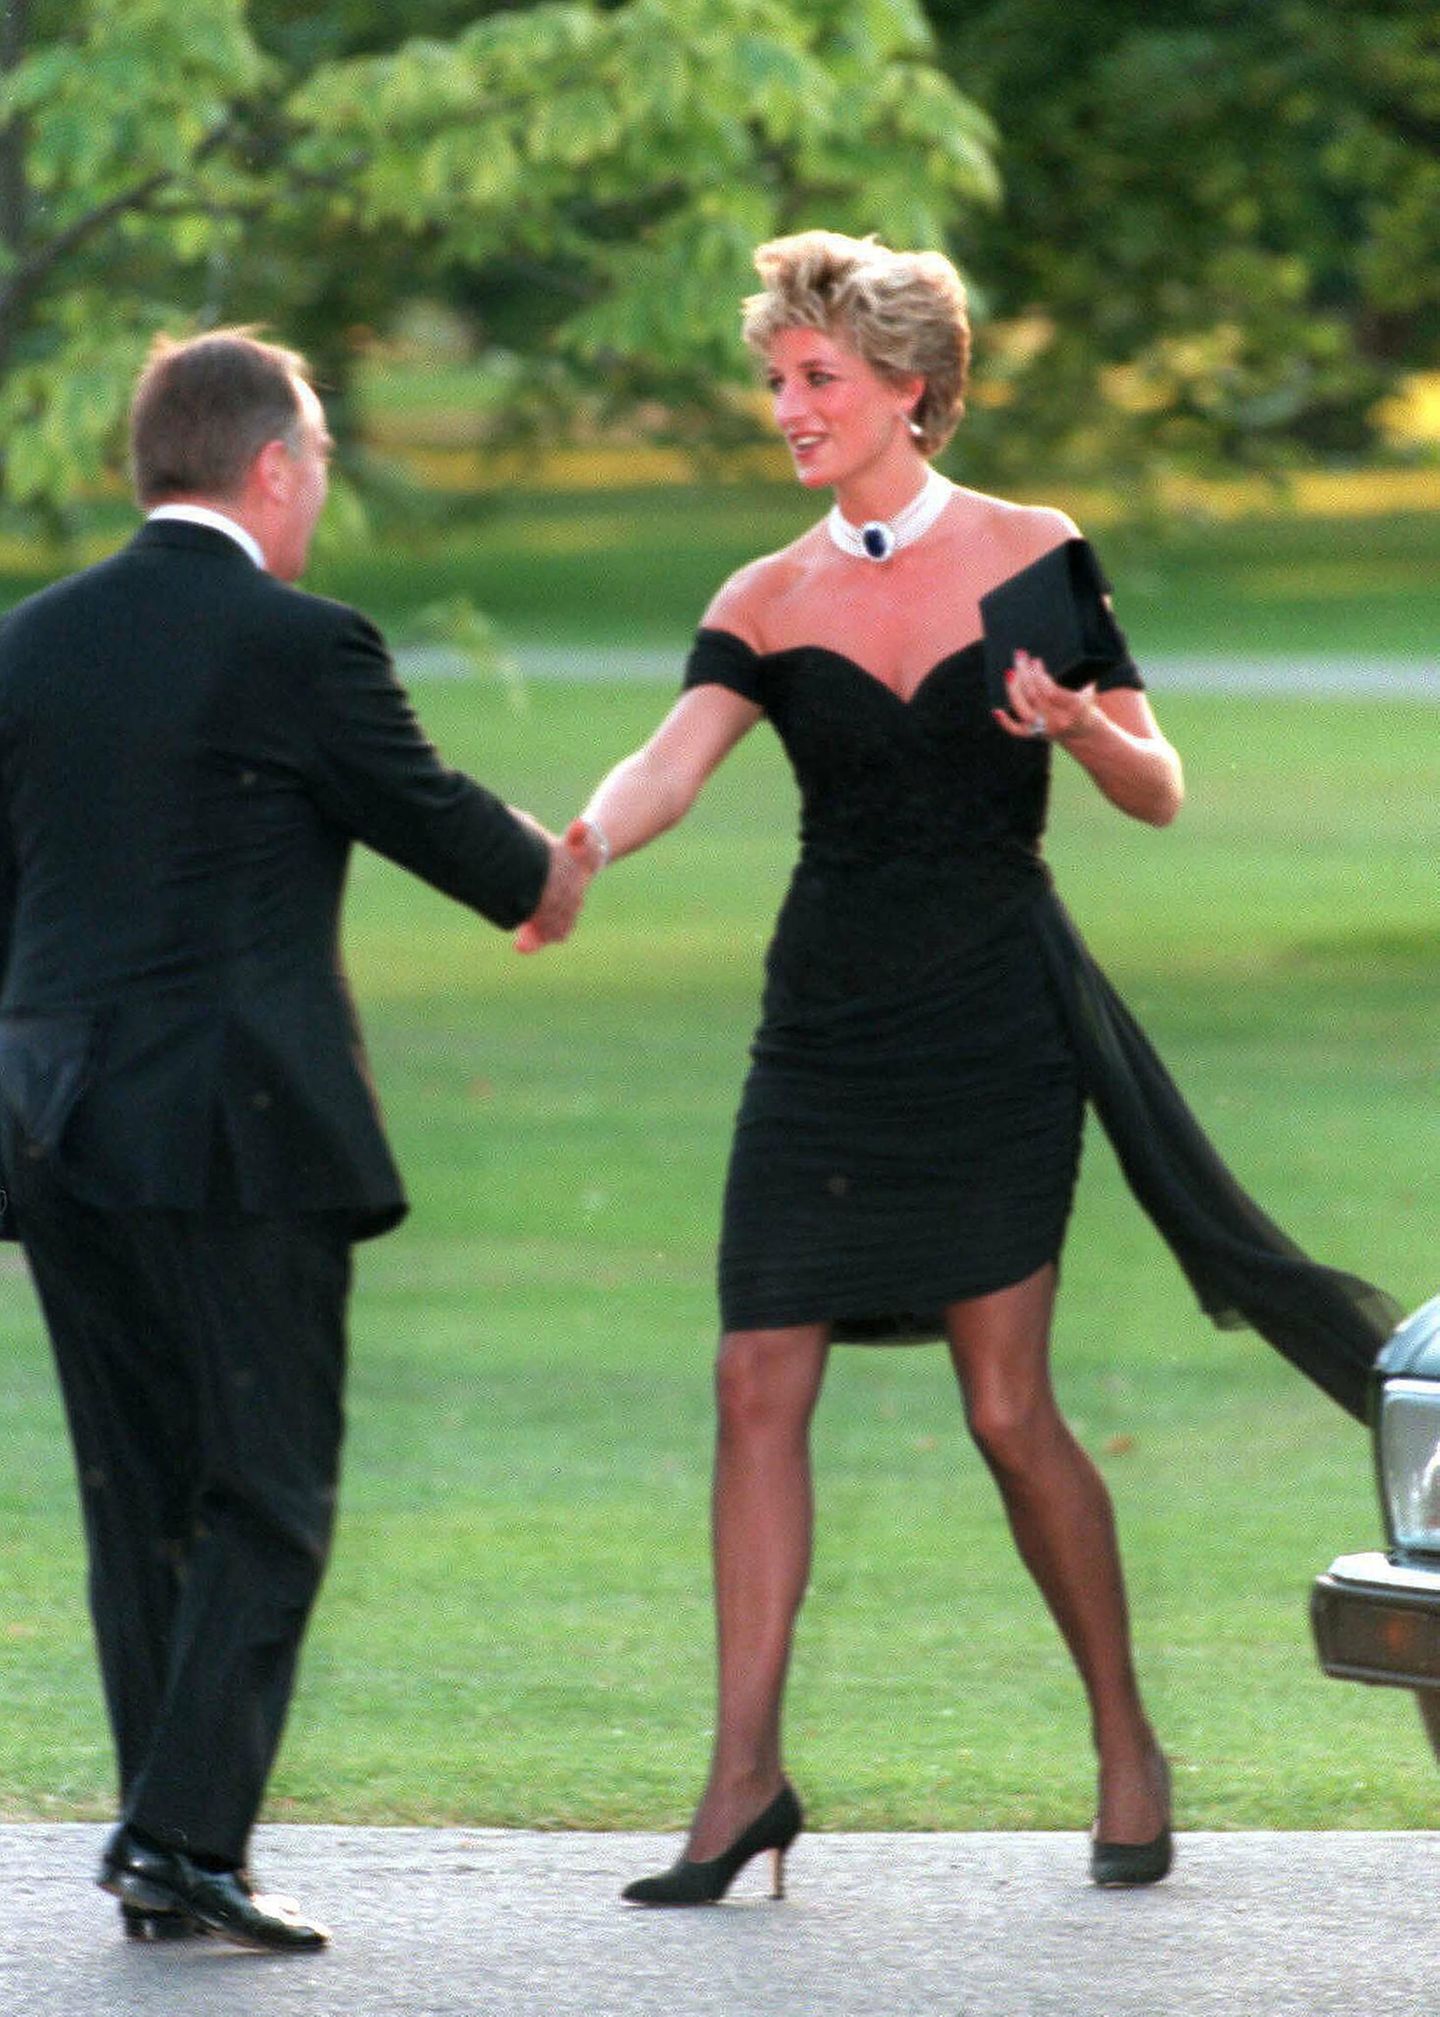 Es ist das vermutlich berühmteste Kleid der Welt – das sogenannte "Rache-Kleid"! Bei einer Sommerparty 1994 hob Diana das kleine Schwarze auf ein neues Style-Level. Der enge Schnitt und die nackten Schultern waren ultrasexy und sorgten für einen Auftritt, der wohl für immer unvergessen bleibt. Das LBD wurde übrigens "Rache-Kleid" getauft, weil Prince Charles nur wenige Stunden vor Dianas Auftritt in einem TV-Interview öffentlich zugab, während seiner Ehe mit ihr eine Affäre mit Camilla Parker-Bowles gehabt zu haben. Kein Wunder also, dass Diana der Welt danach nur zu gerne gezeigt hat, was ihr untreuer Exmann da verpasst, oder?